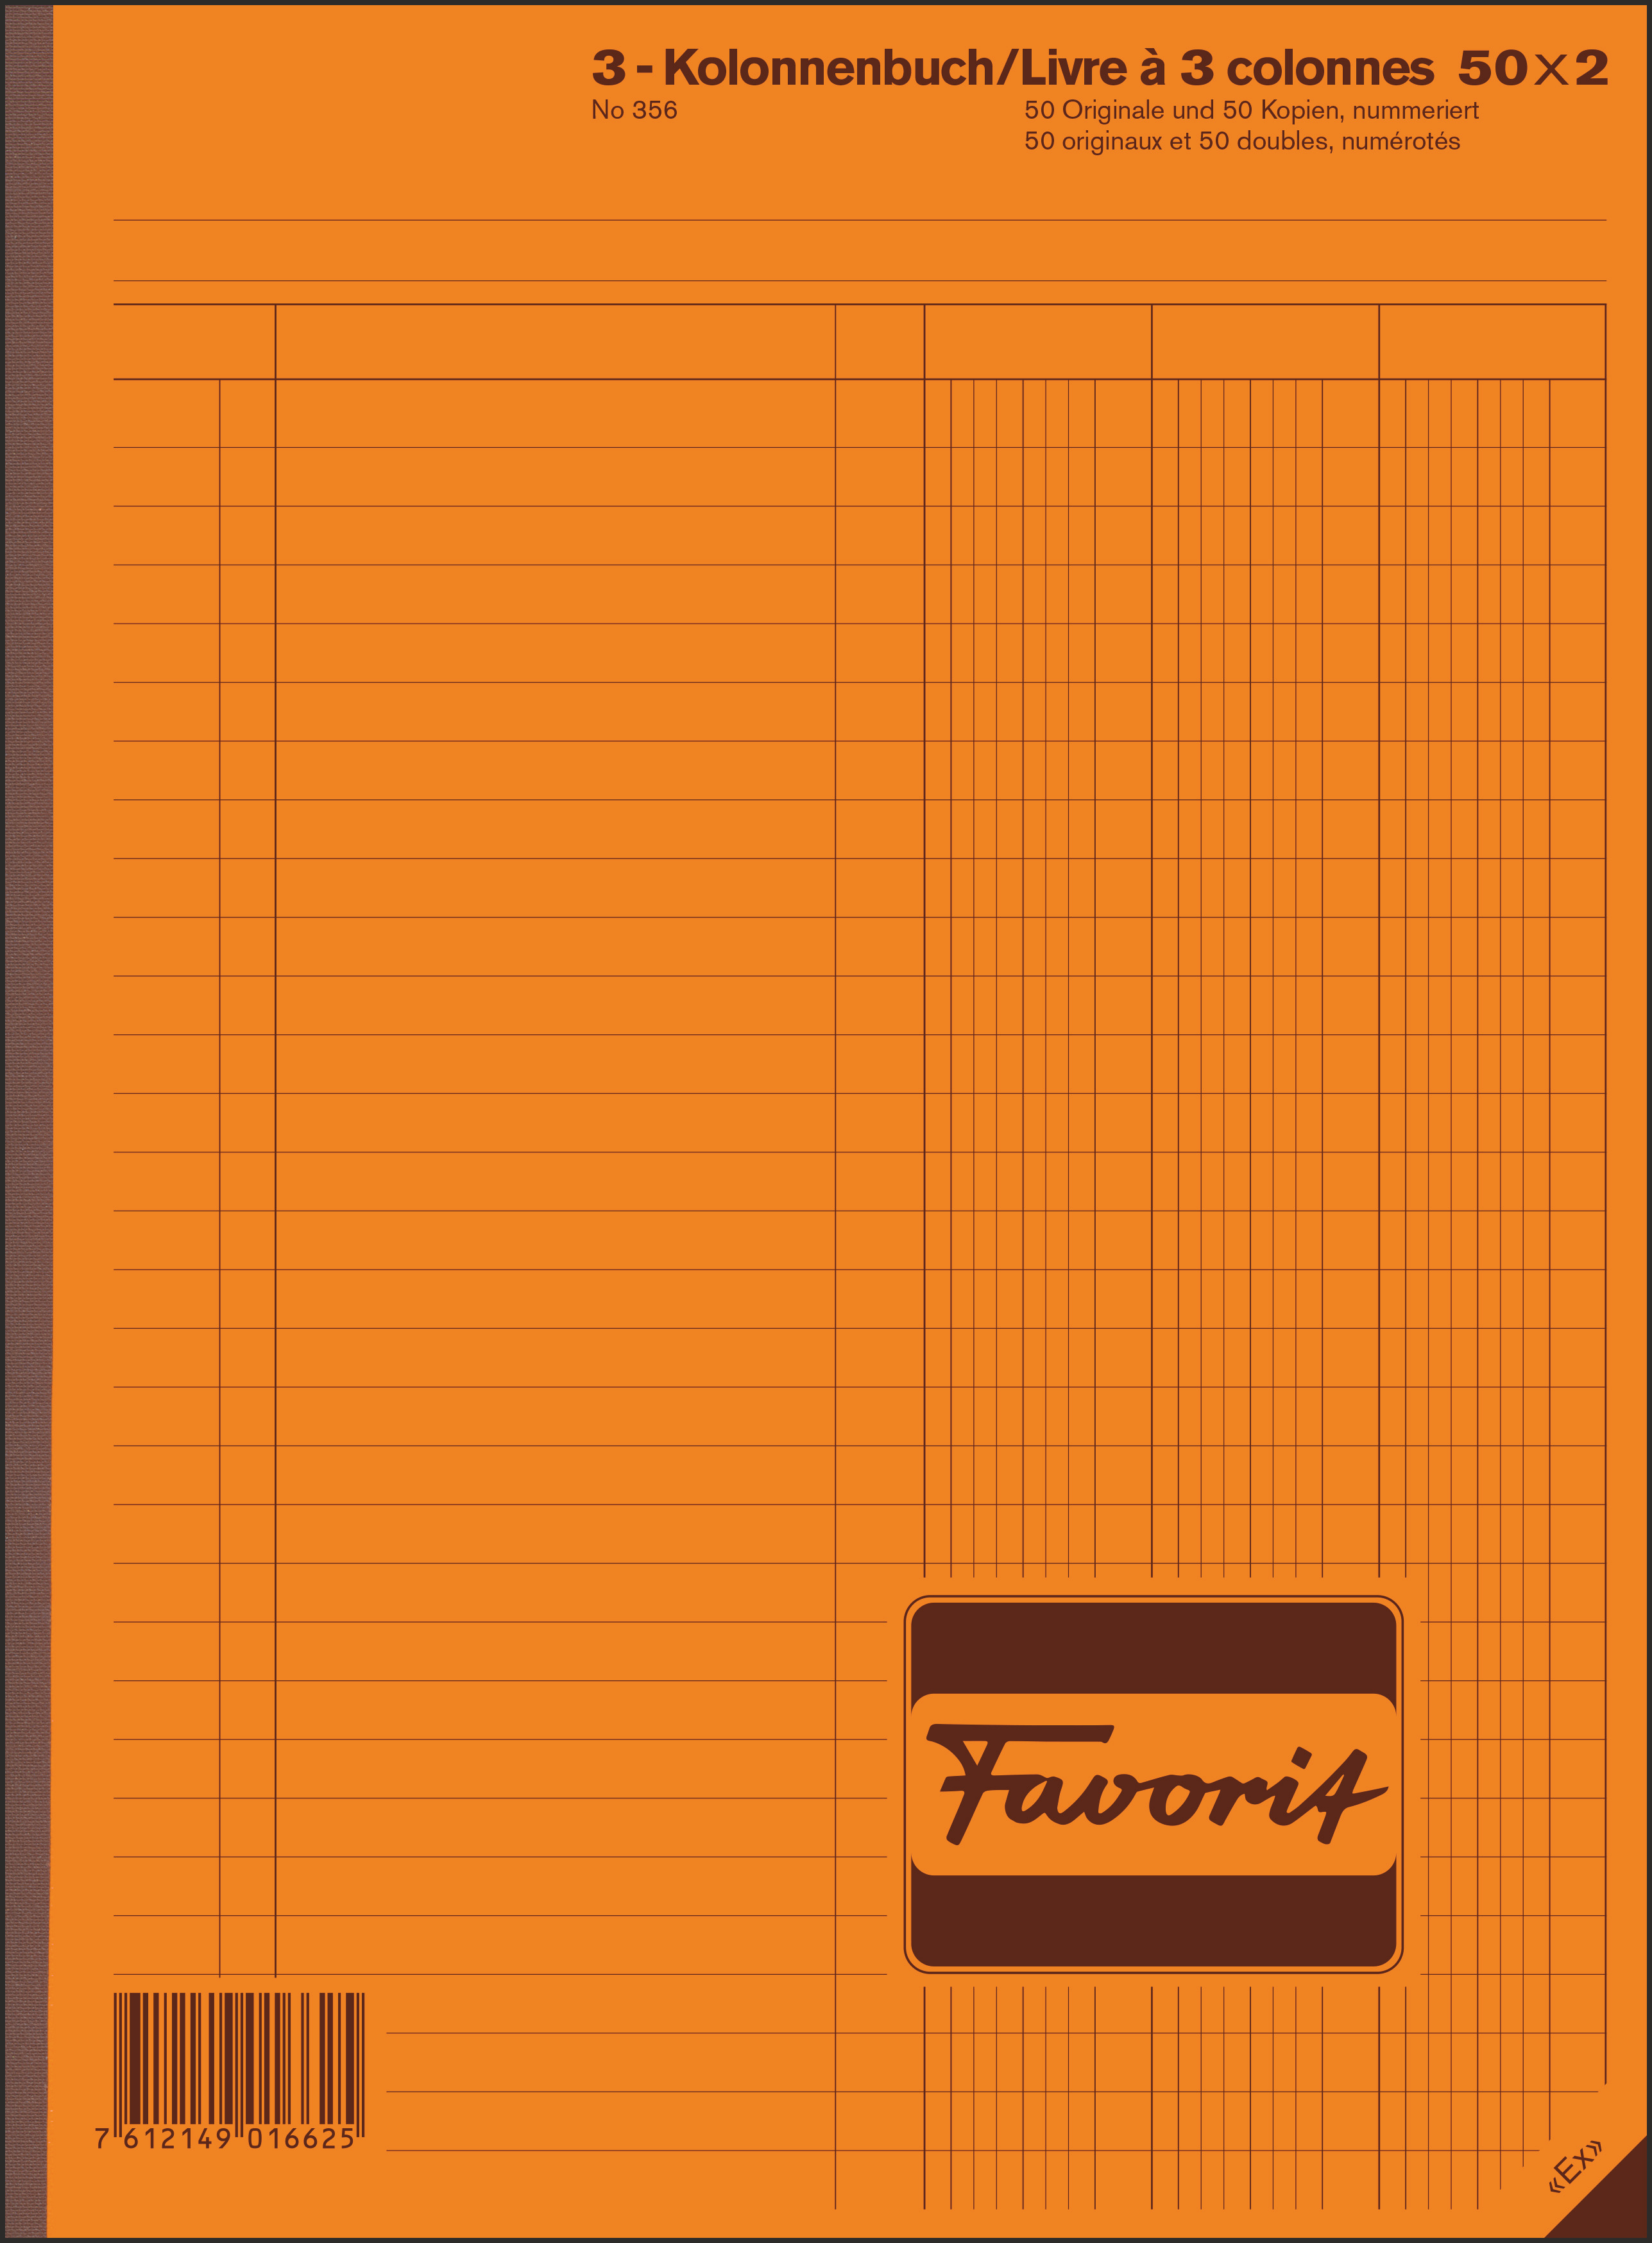 FAVORIT 3-Kolonnenbuch A4 50x2 mit Indigo<br>